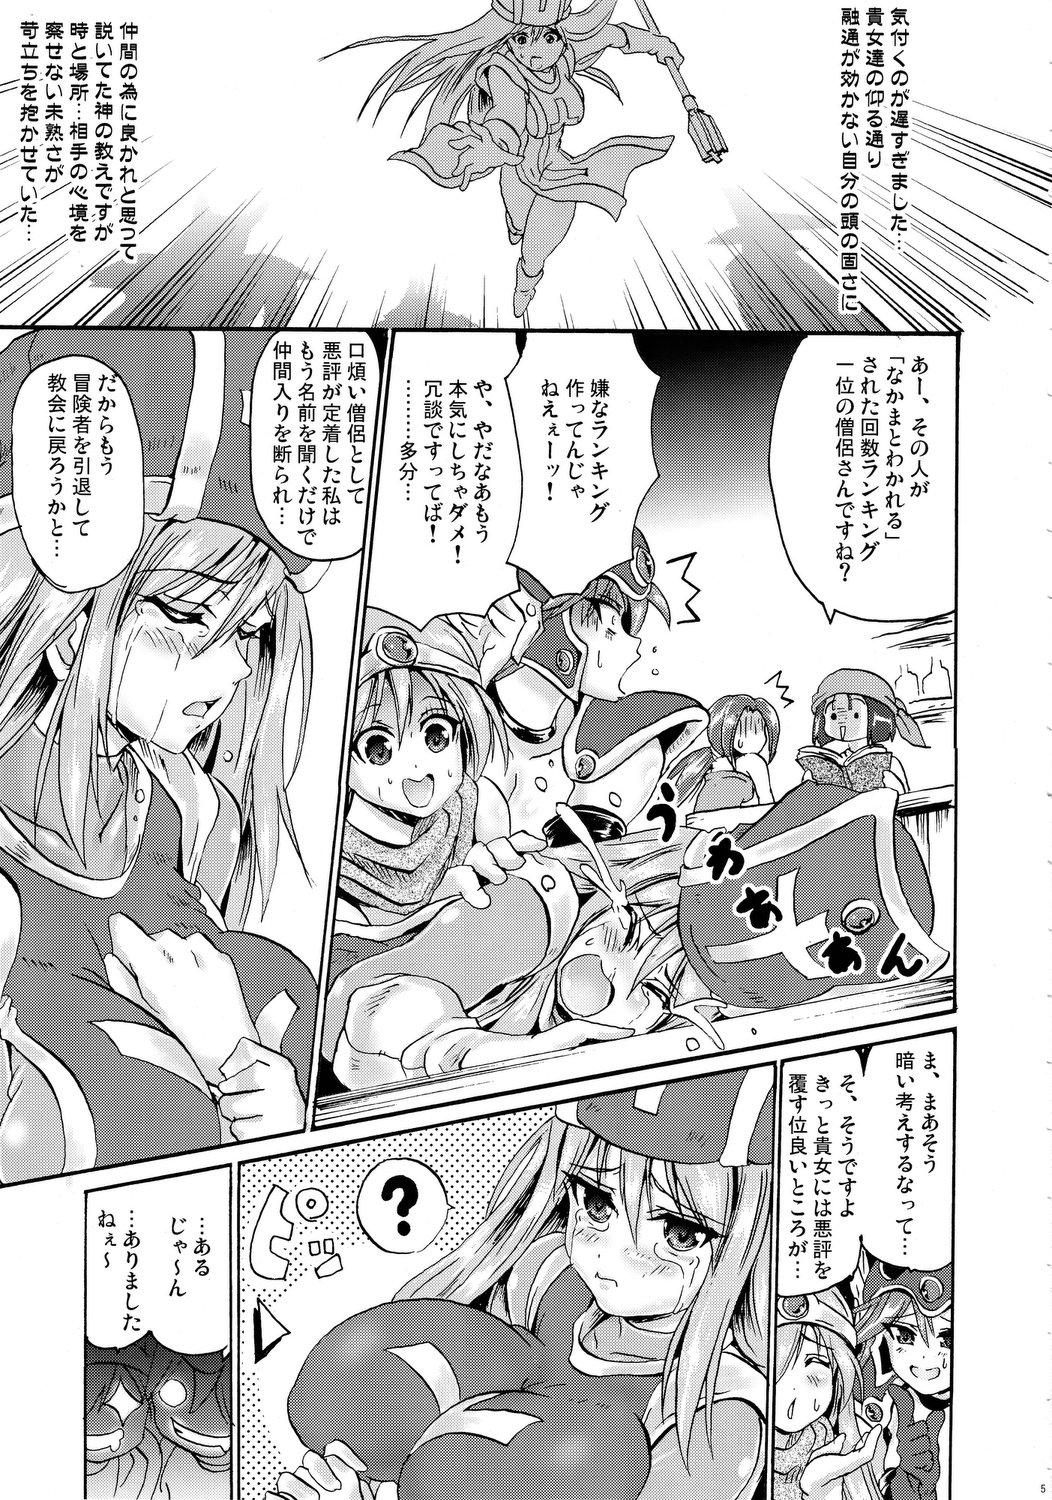 Buceta Sasou Odori - Dragon quest iii Teenies - Page 4